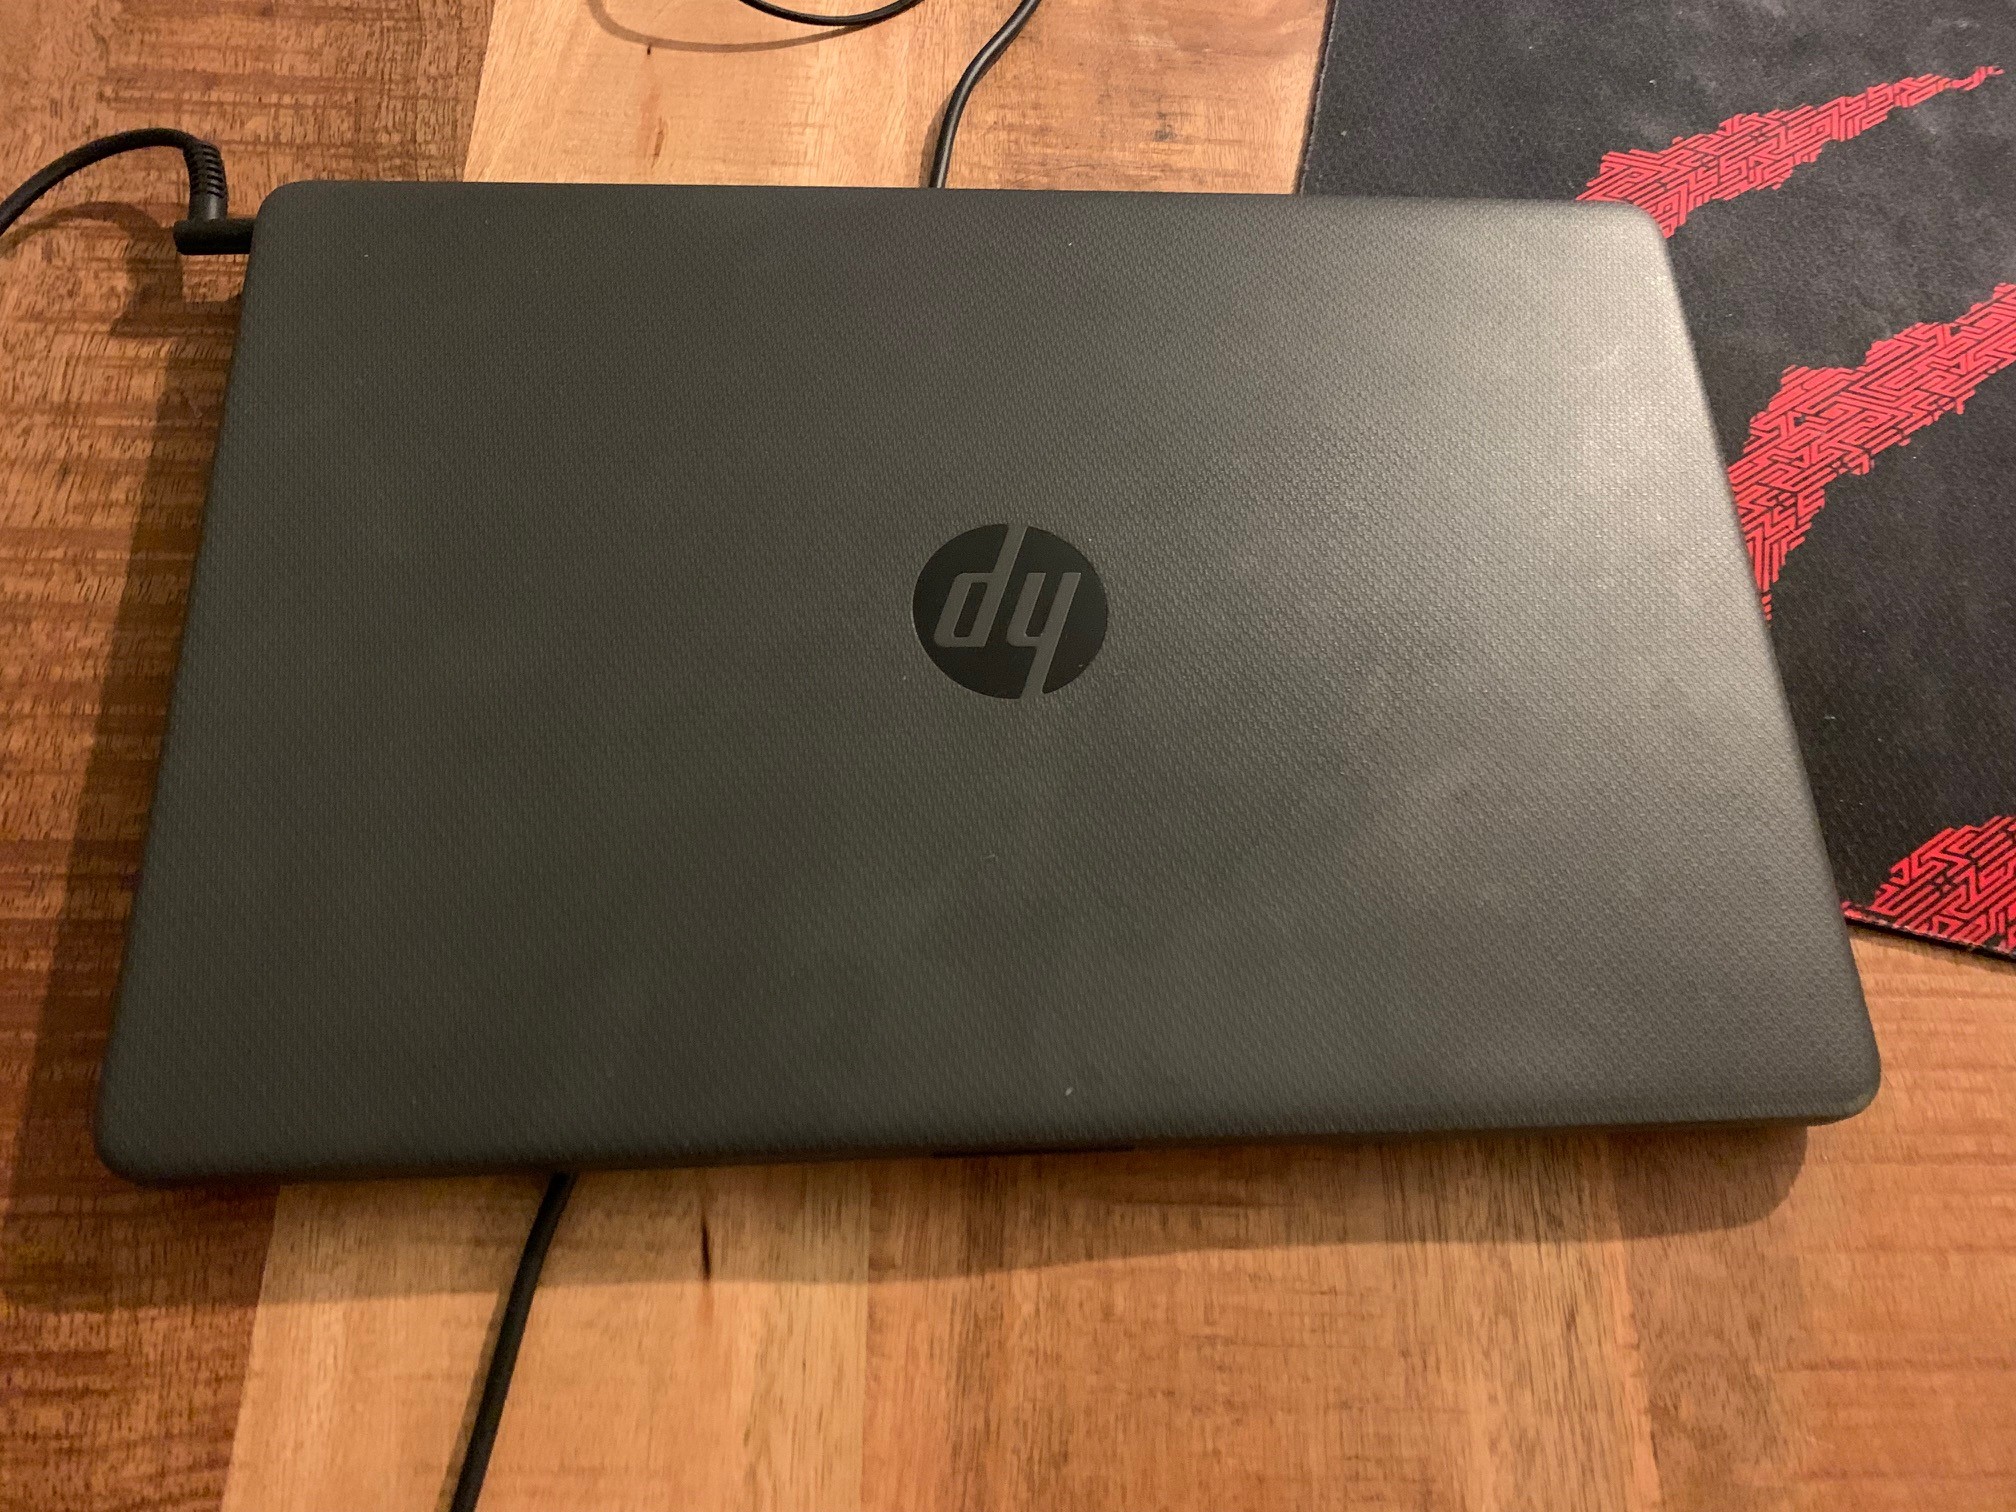 出售HP普通版本笔记本，Cool bule购买，原价519，现220出售